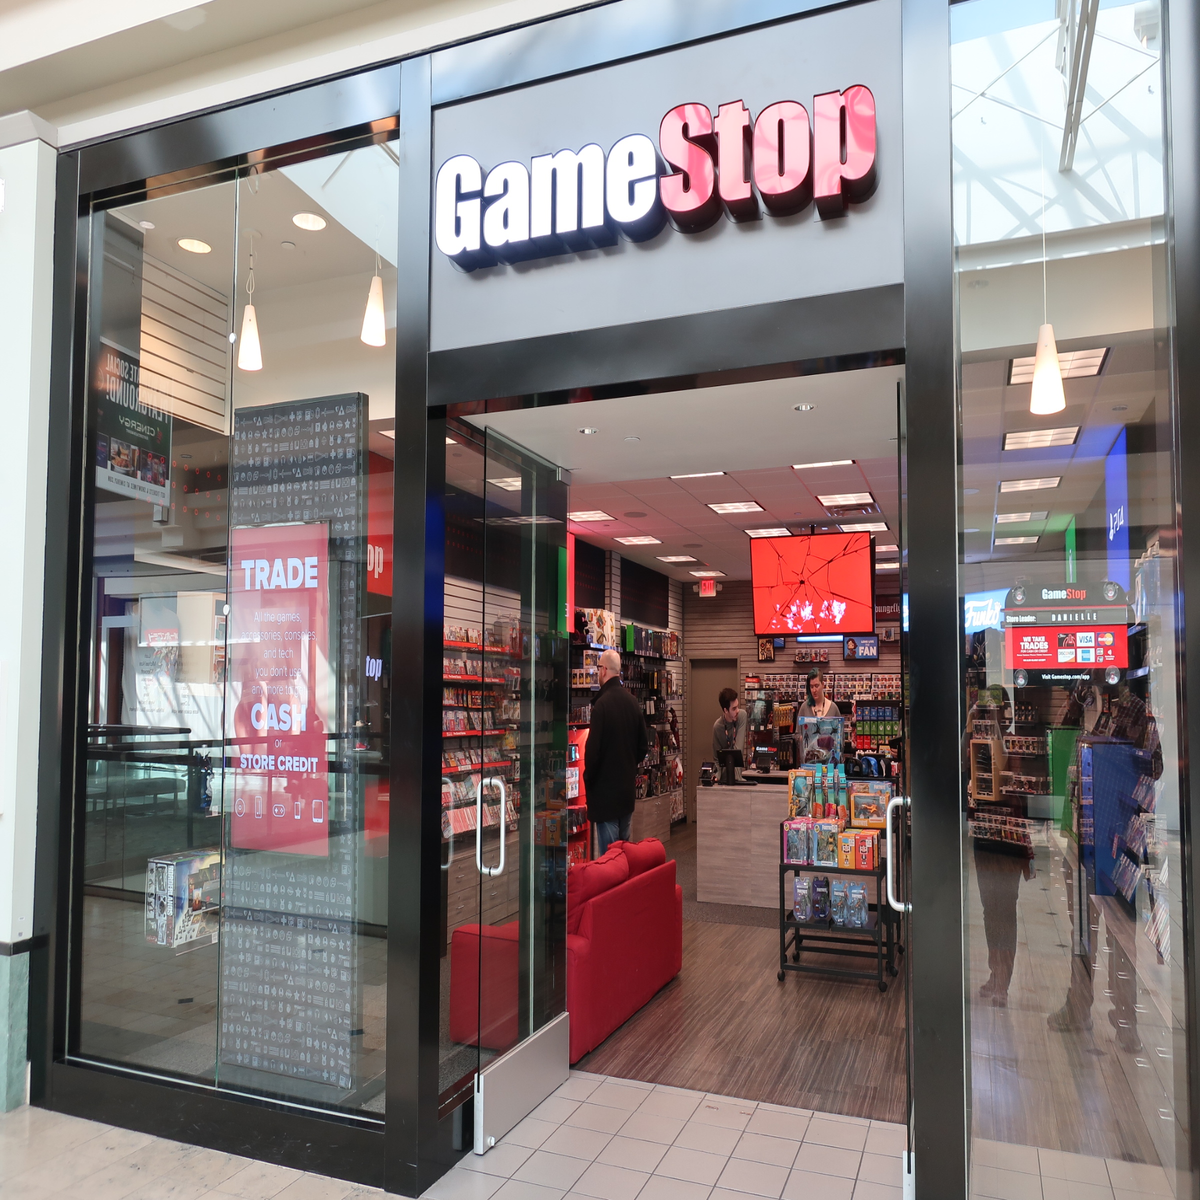 B&M Retailer GameStop to Purchase Flash Game Site Kongregate